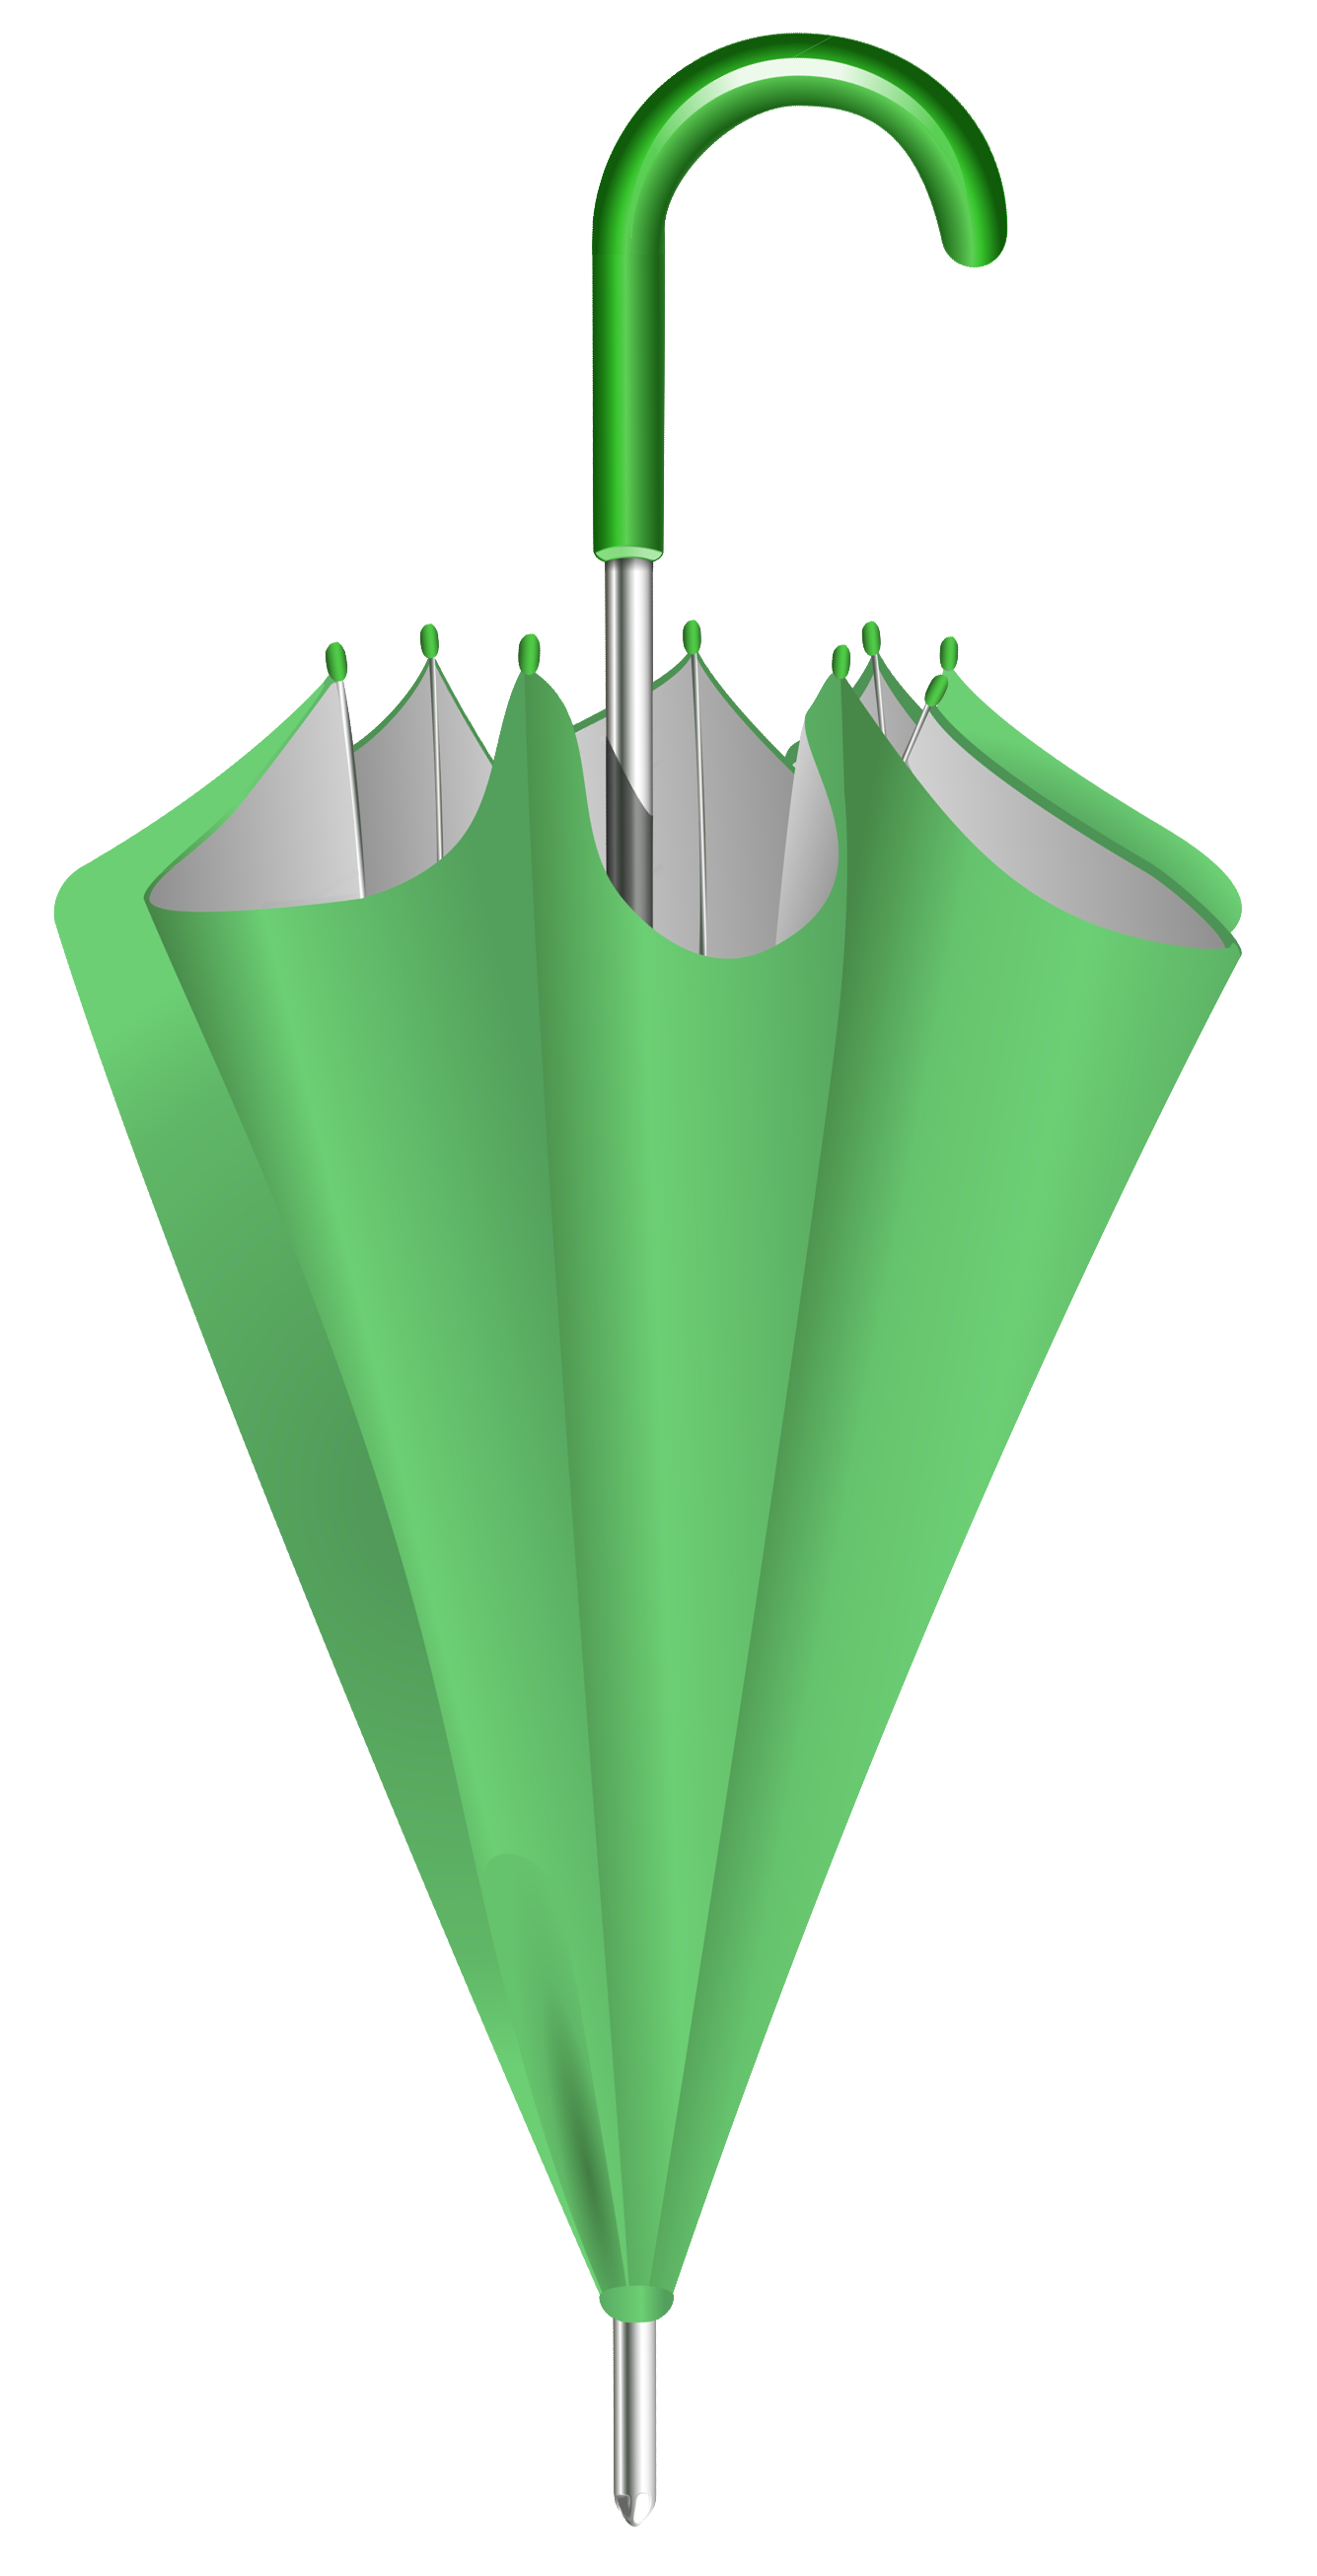 Green Closed Umbrella PNG Clipart Image